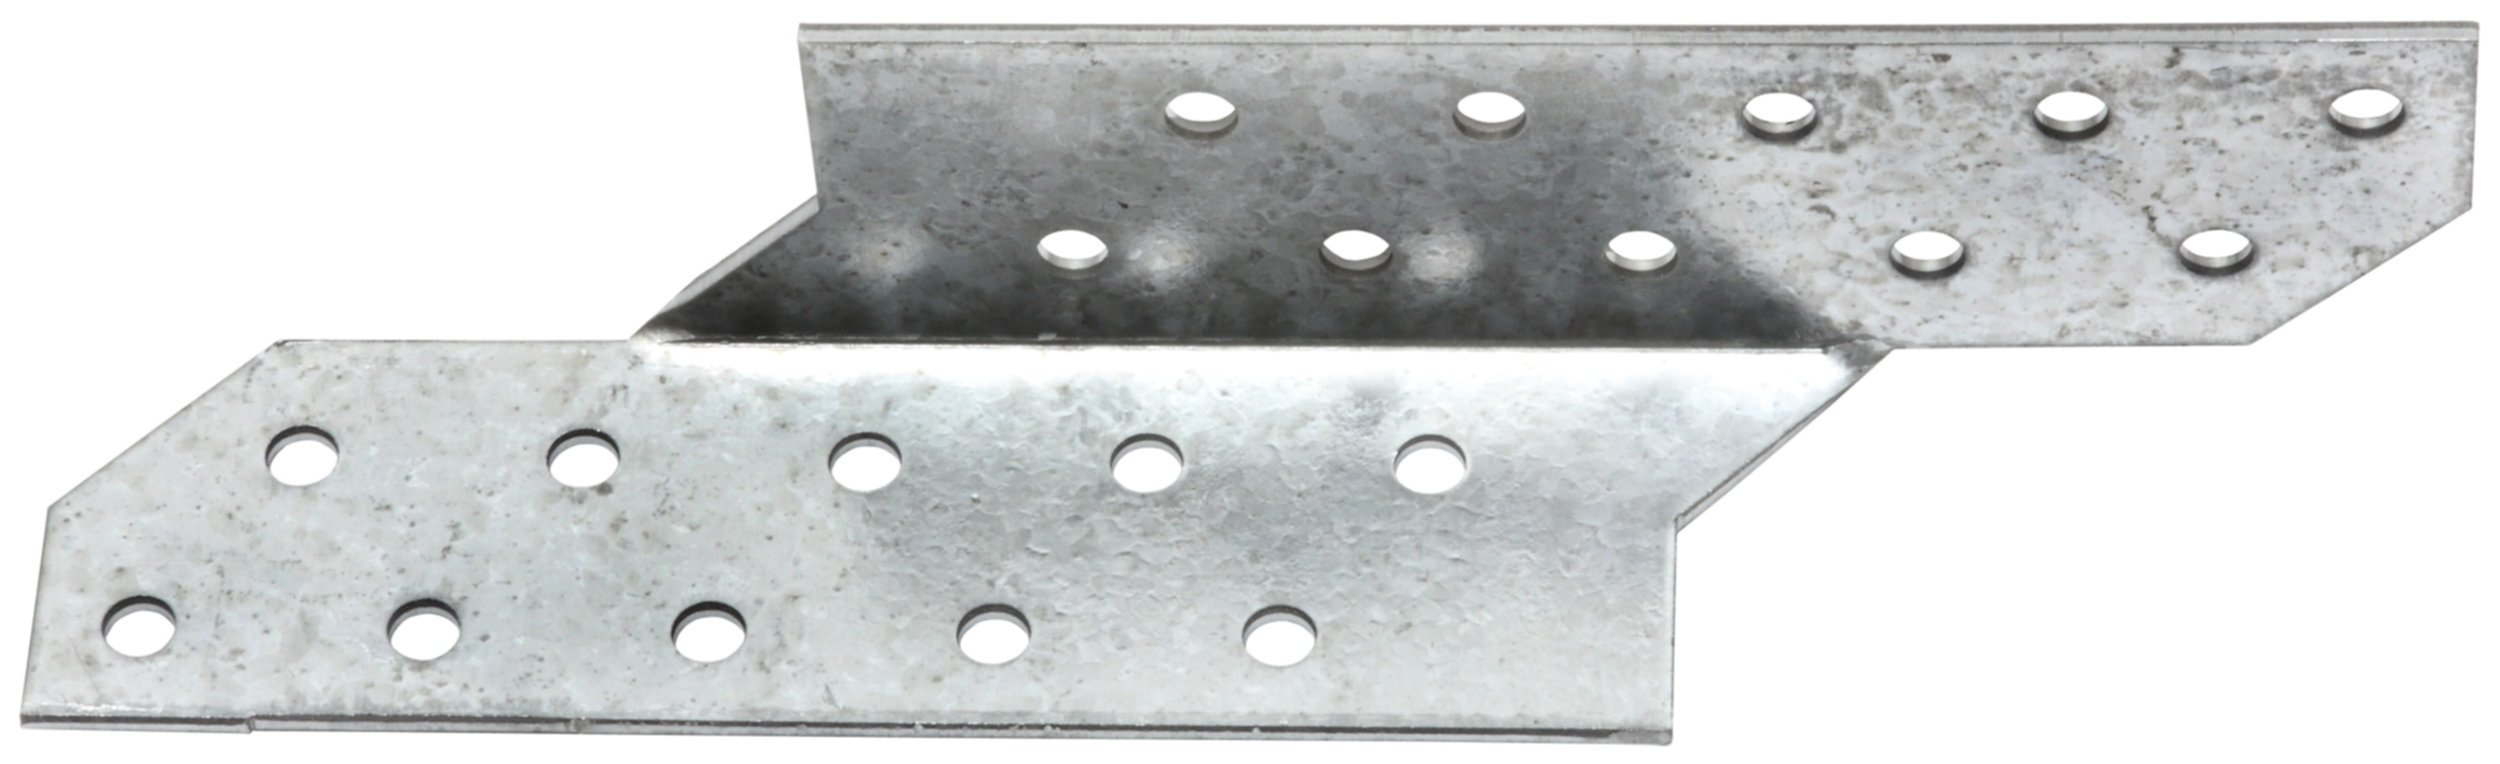 Patte de solivage, droite, 170 x 35 x 35 x 2, acier galvanisé à chaud